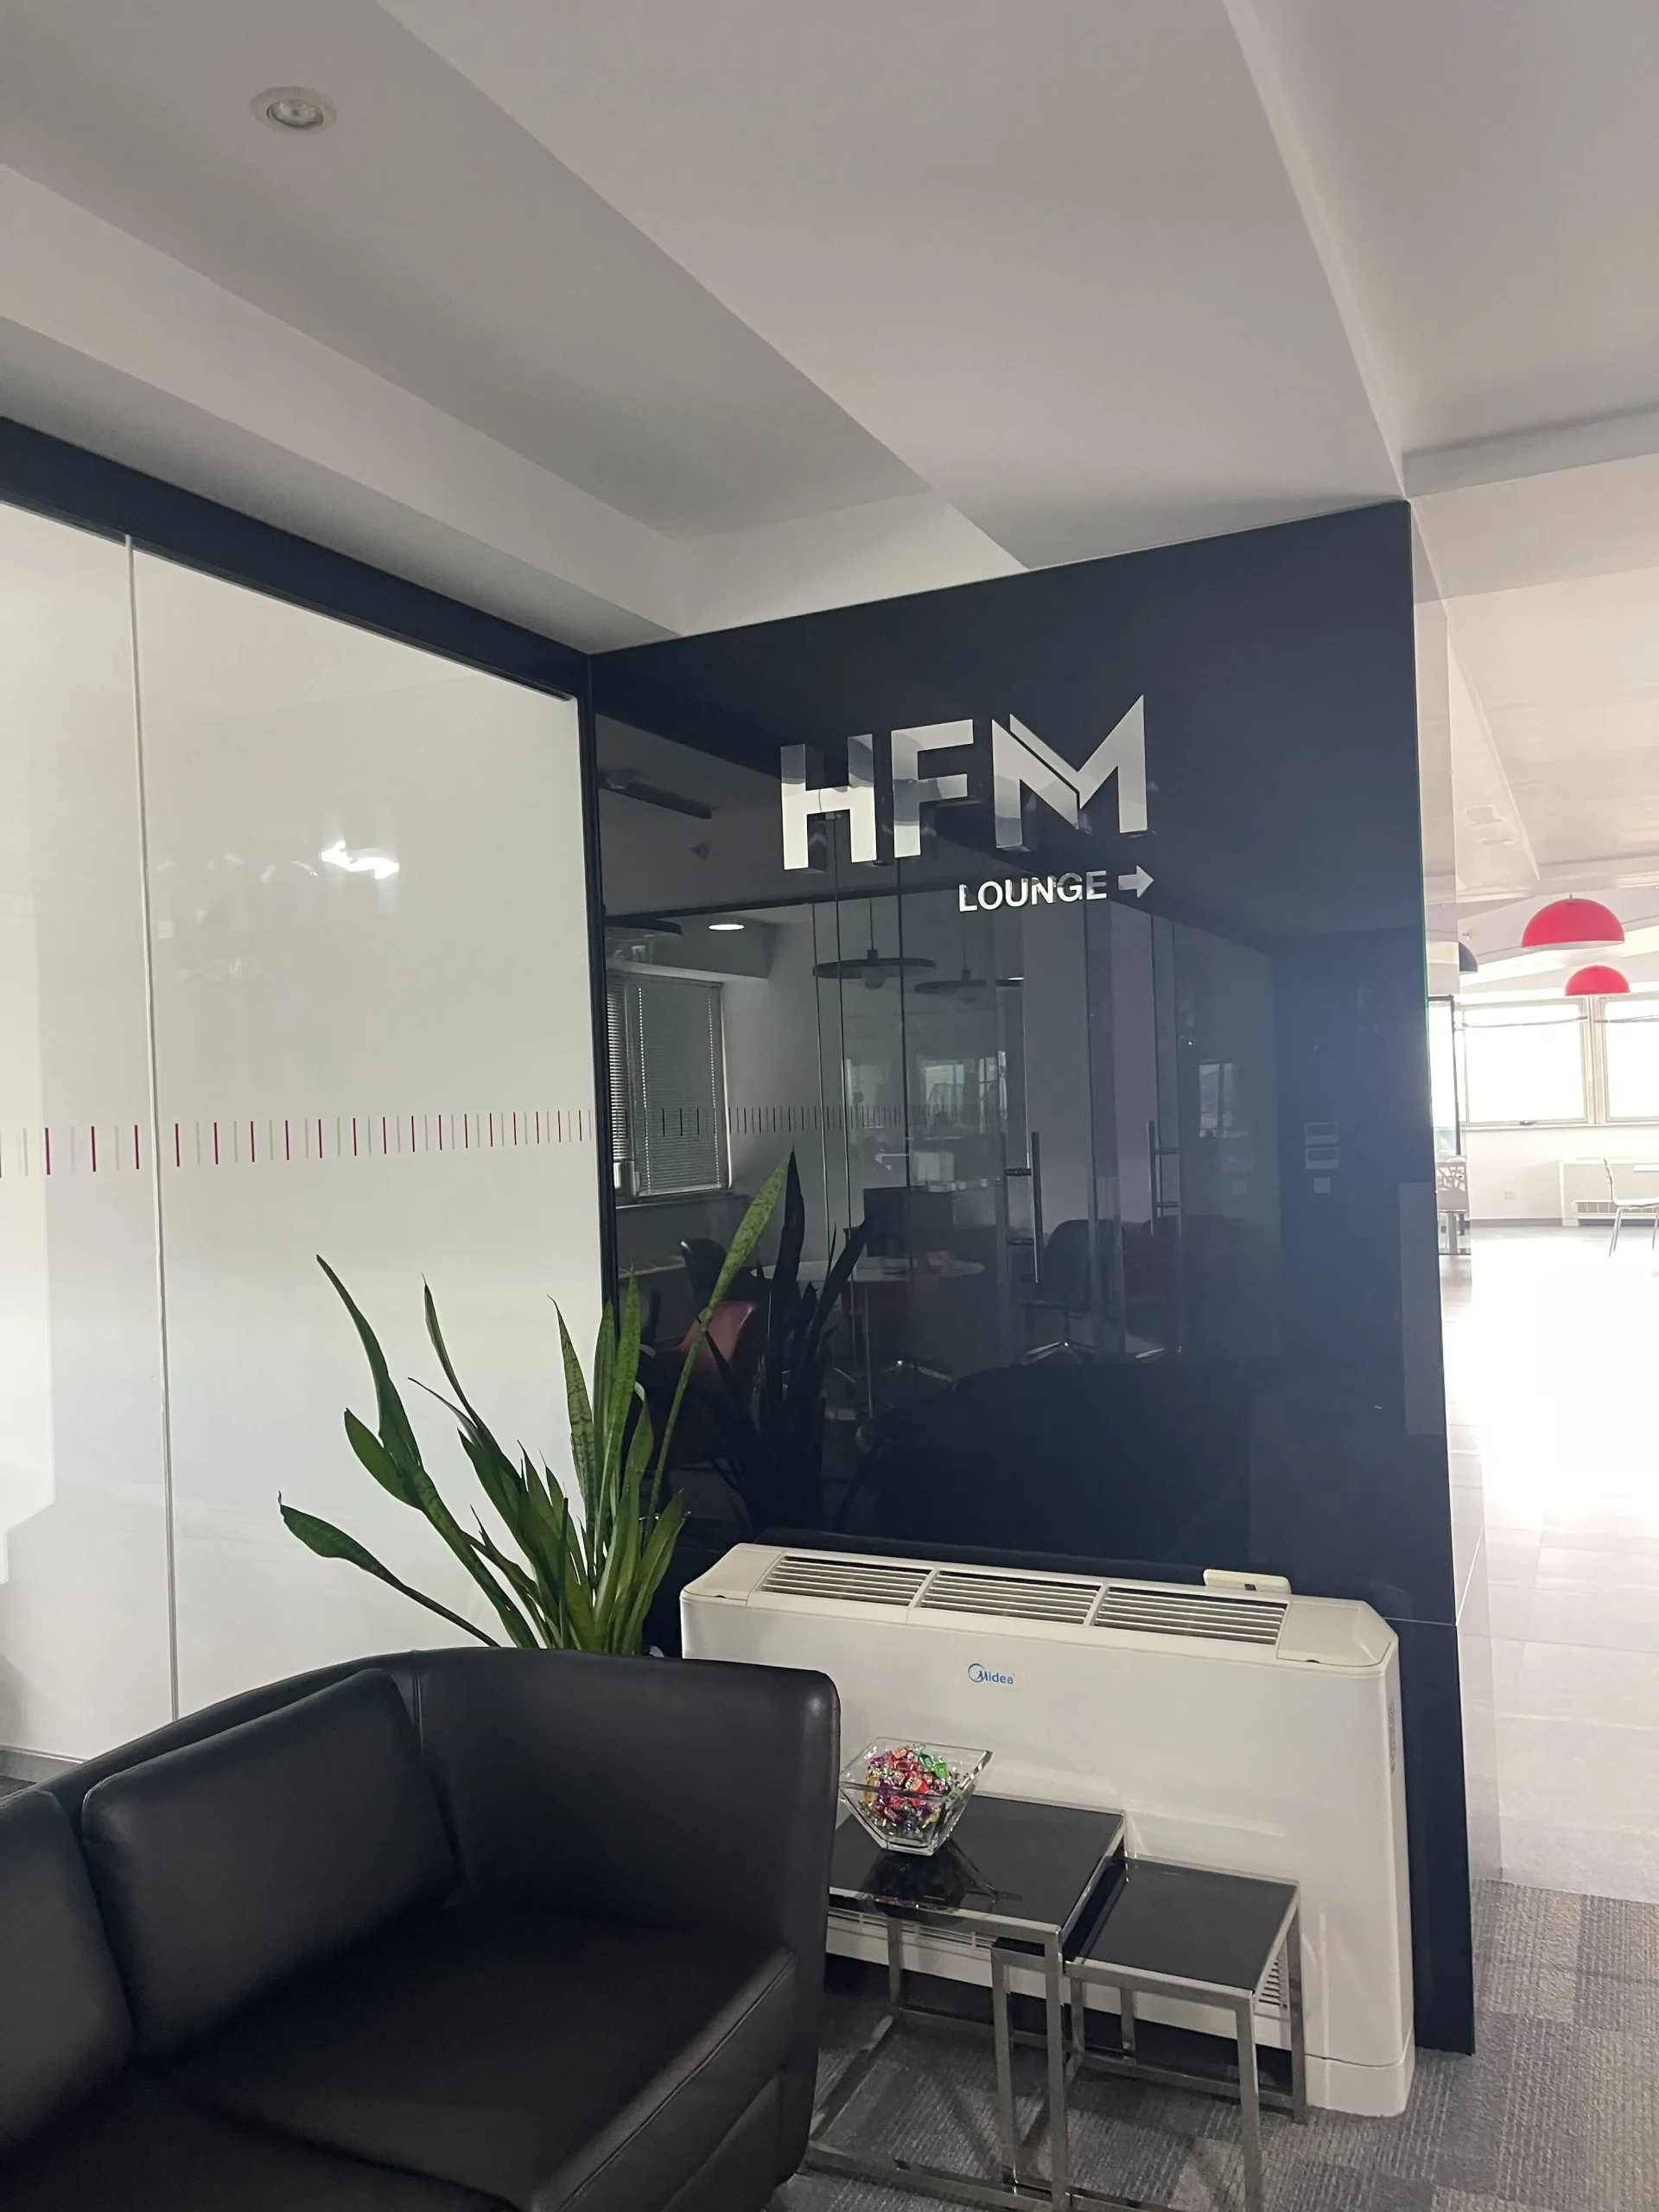 HFM（Hotforex）のオフィス画像